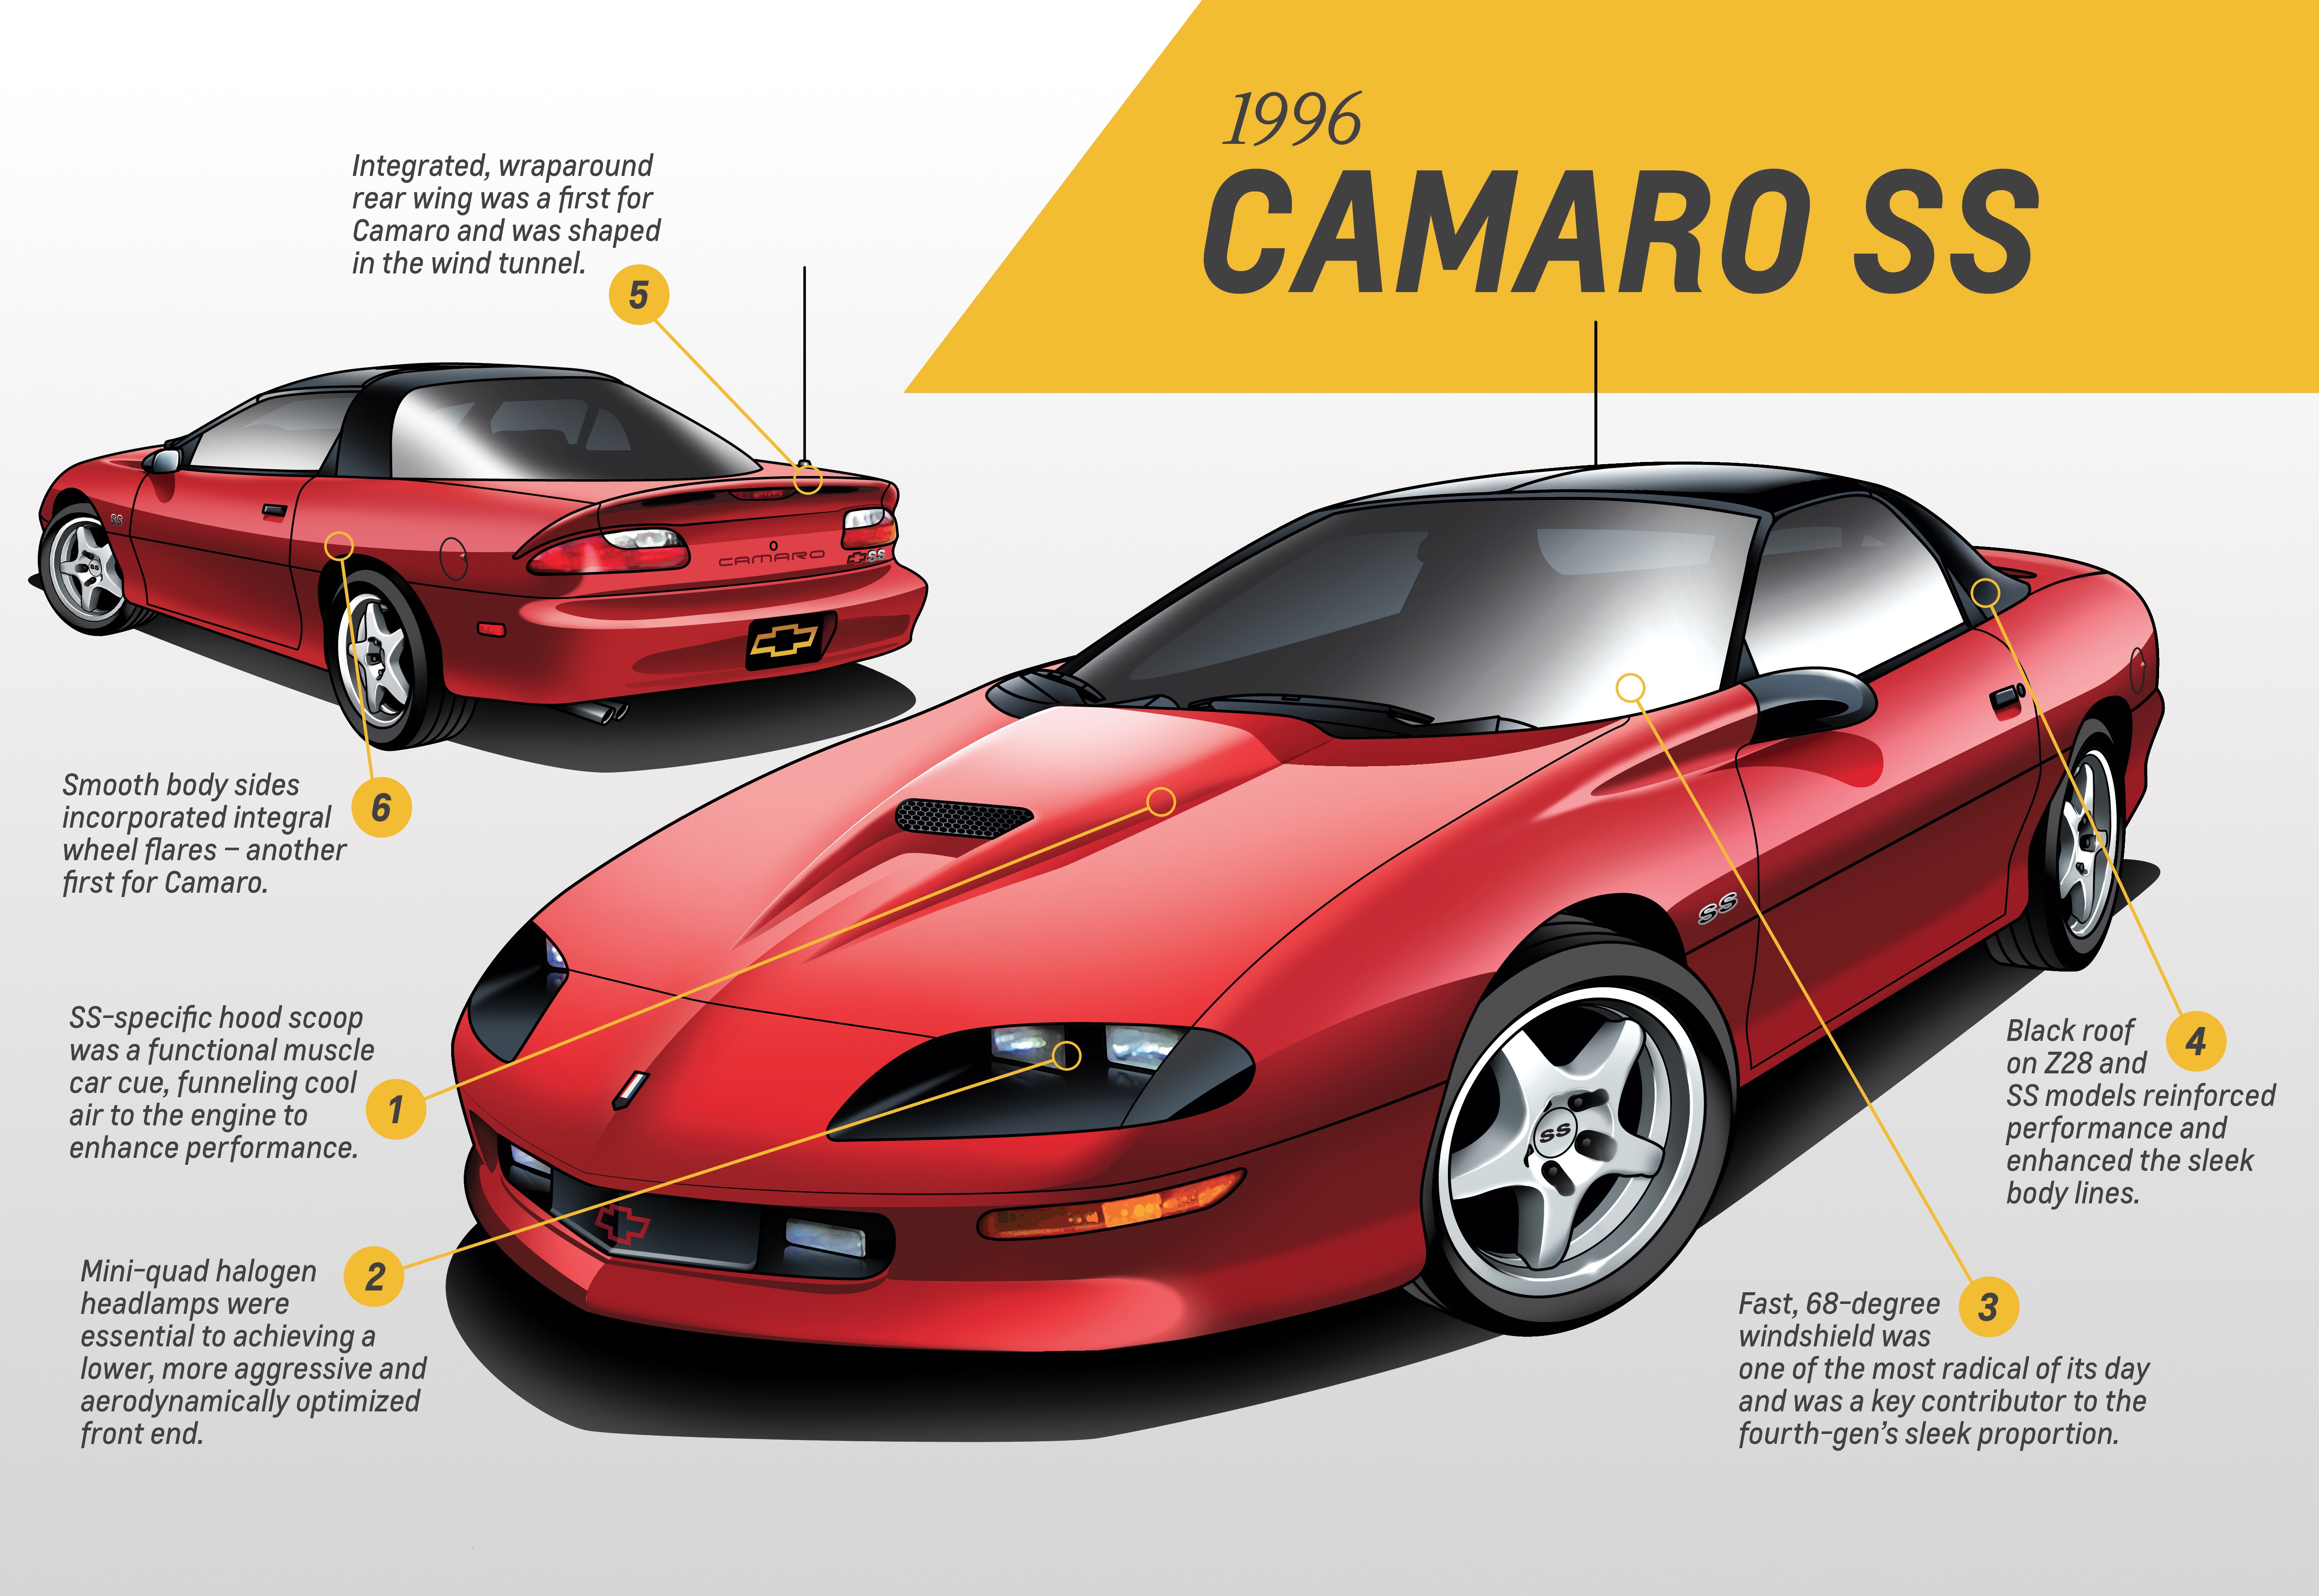 Camaro - Fourth Generation – 1993-2002 - Design analysis: Kirk Bennion, Chevrolet Camaro exterior design manager